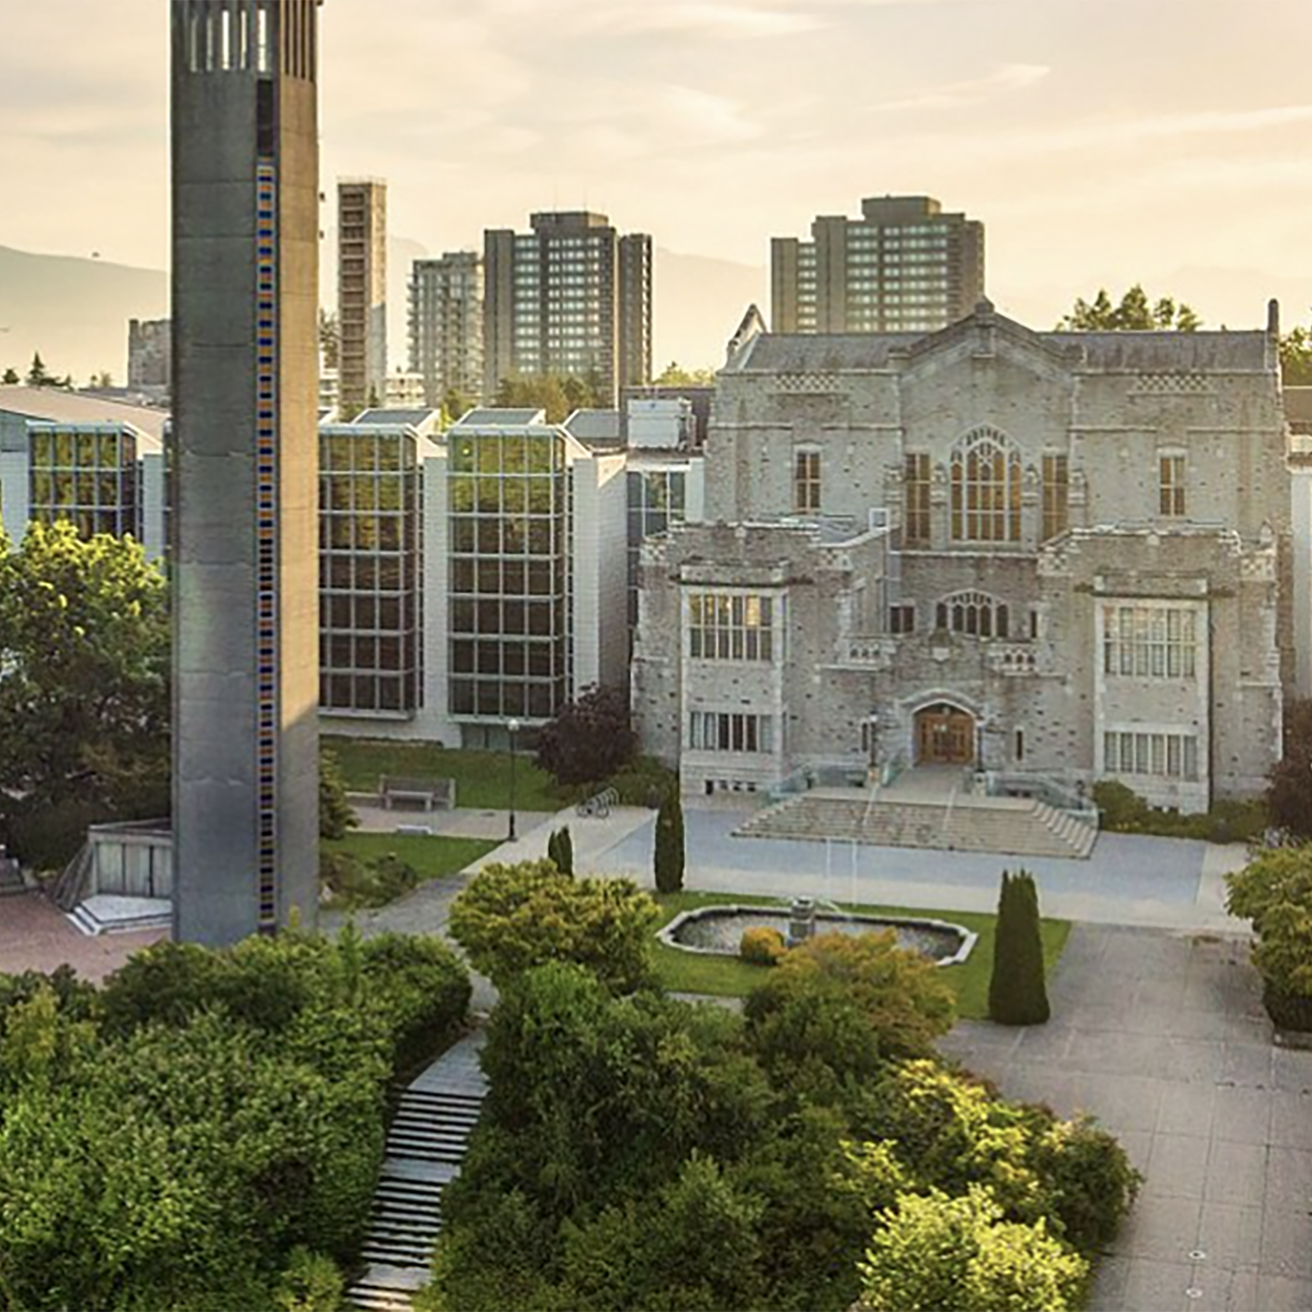 University of British Columbia campus